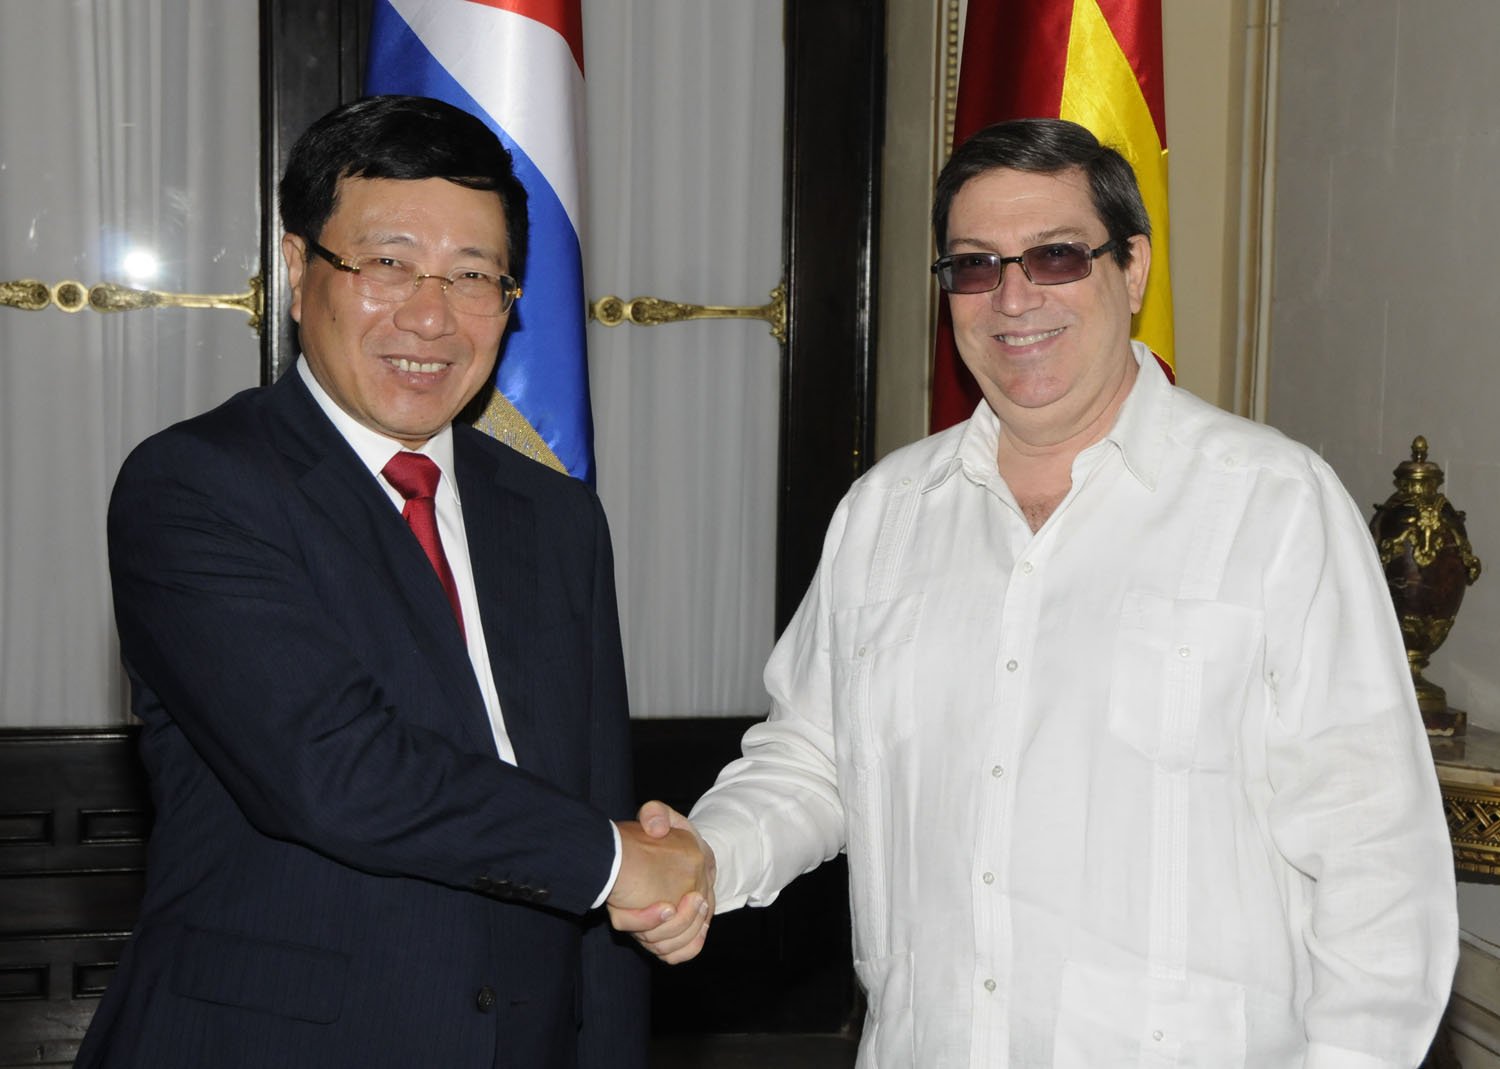 Phó Thủ tướng Phạm Bình Minh và Bộ trưởng Ngoại giao nước Cộng hòa Cuba Bruno Rodríguez Parrilla. Ảnh: baoquocte.vn